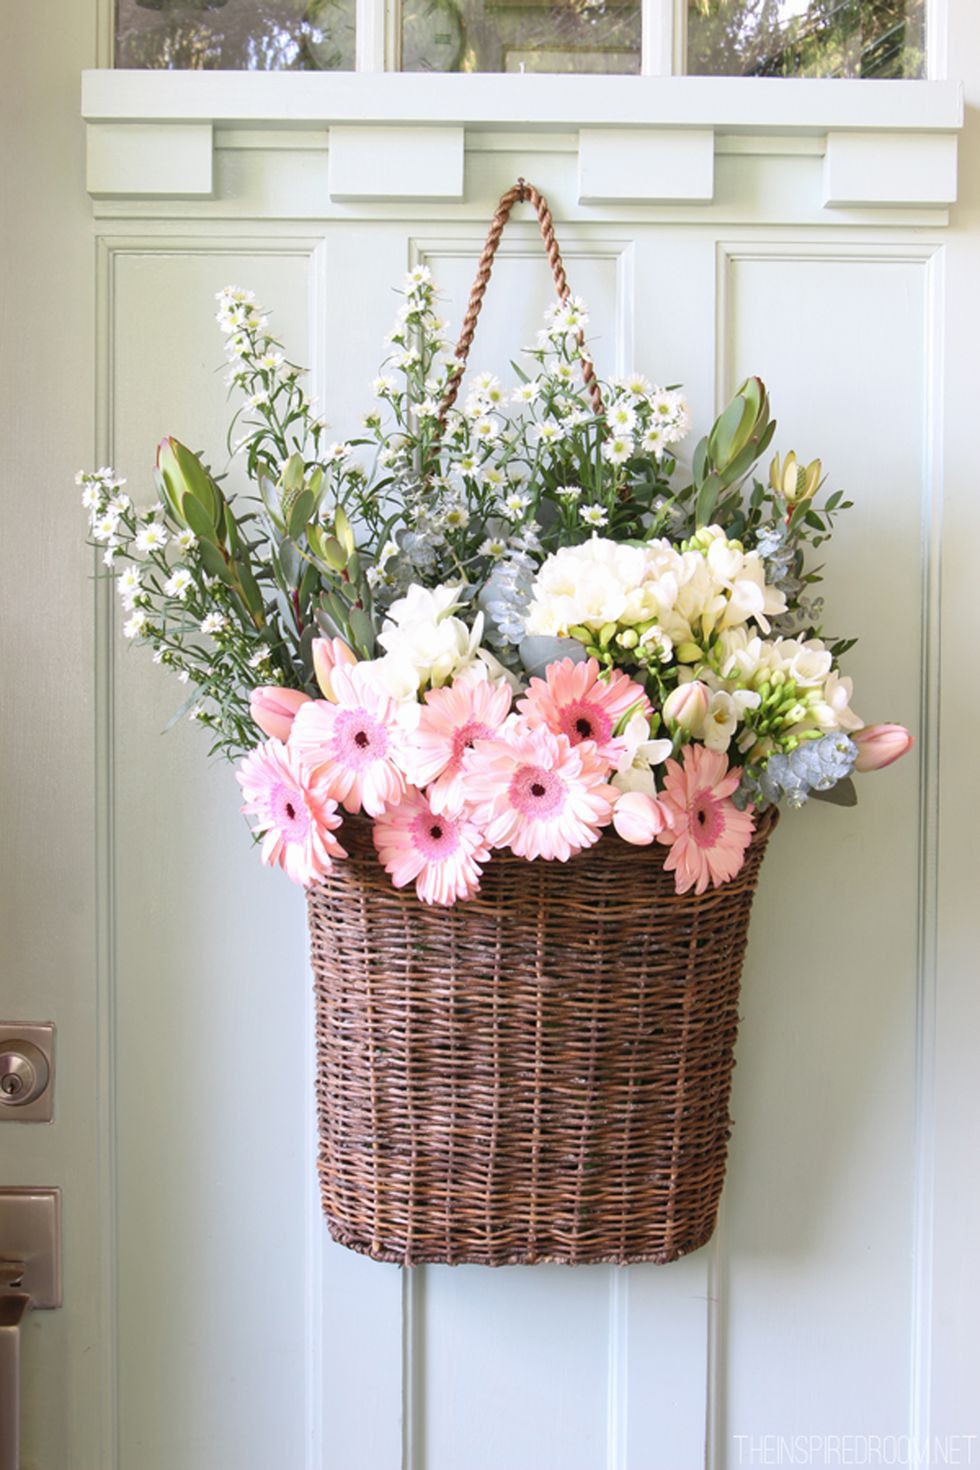 15 cách cắm hoa tuyệt đẹp vào mùa xuân mà lại tiết kiệm ai cũng nên dắt túi để căn nhà bừng sáng - Ảnh 3.